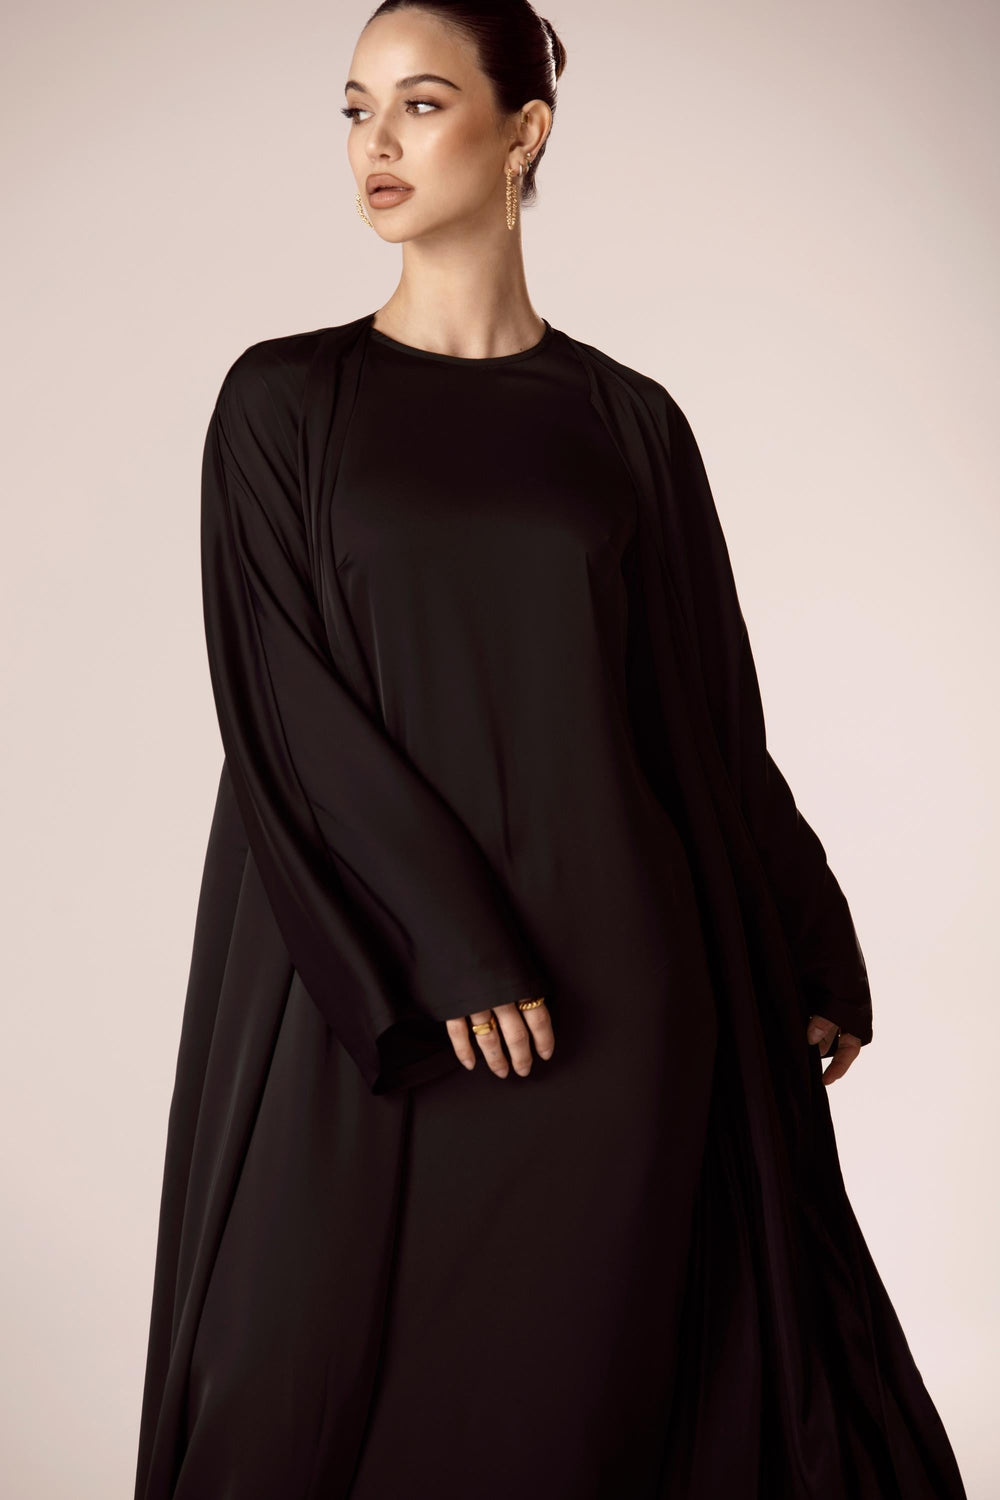 Abayas | Satin Abayas, Matching Abaya Sets, & More